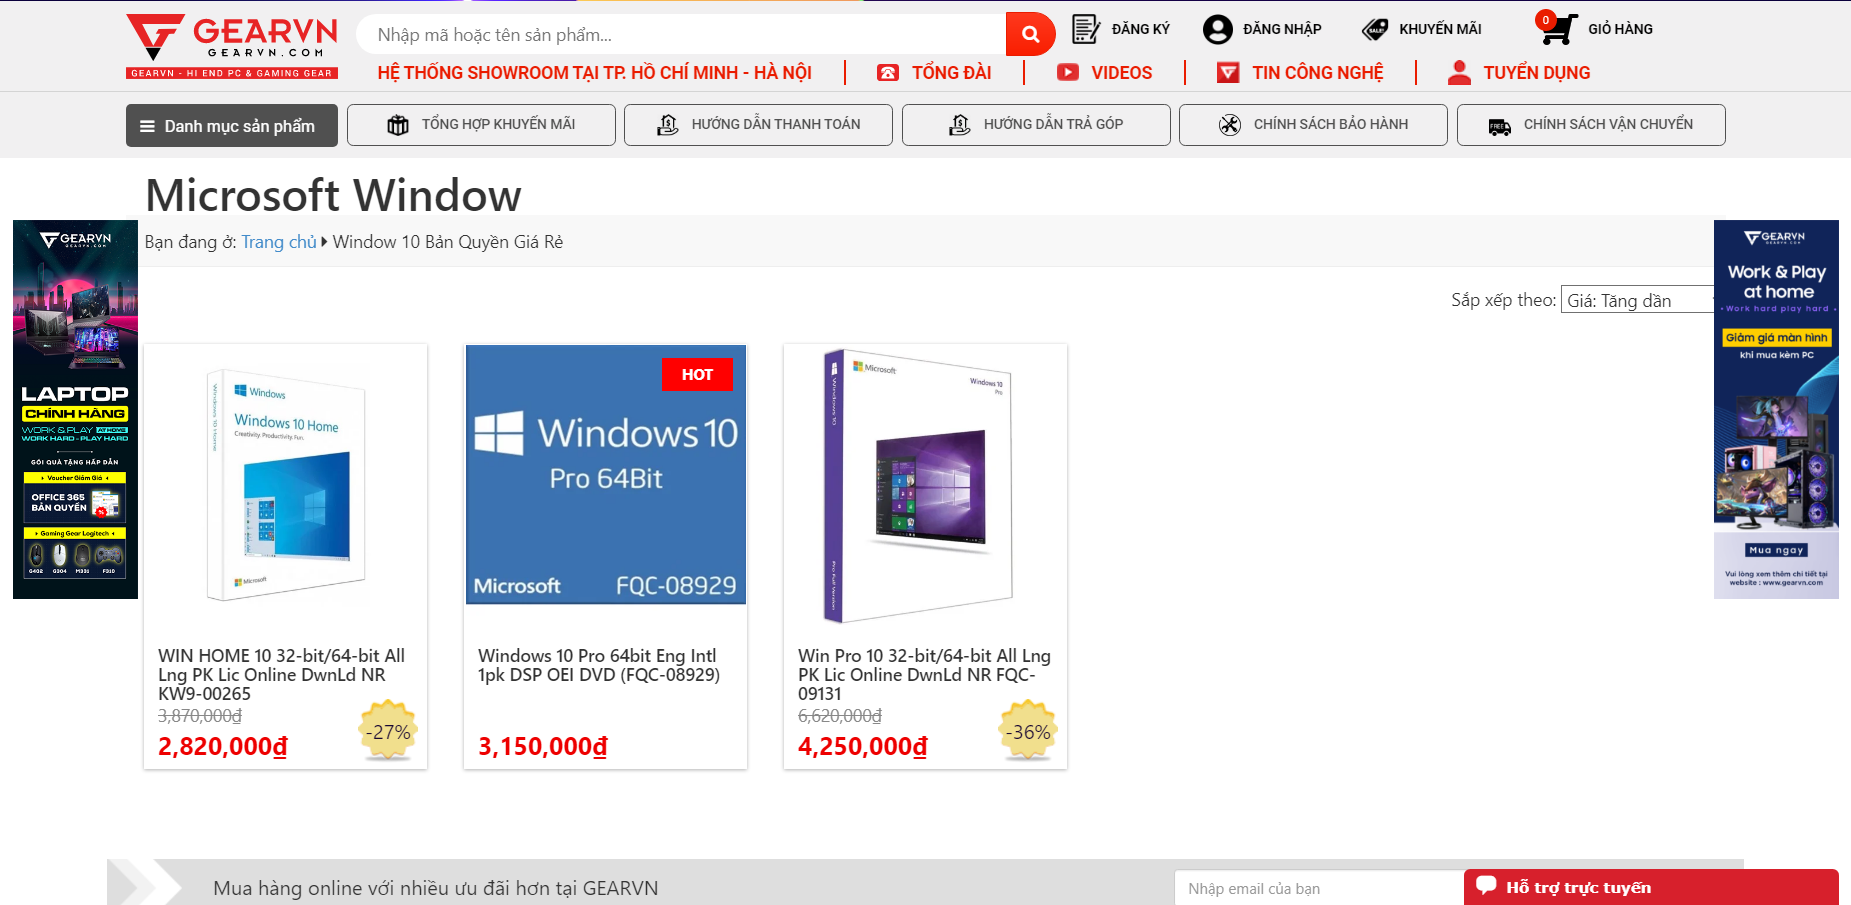 GEARVN.COM - Nơi cung cấp Windows 10 bản quyền giá rẻ, uy tín và đảm bảo nhất